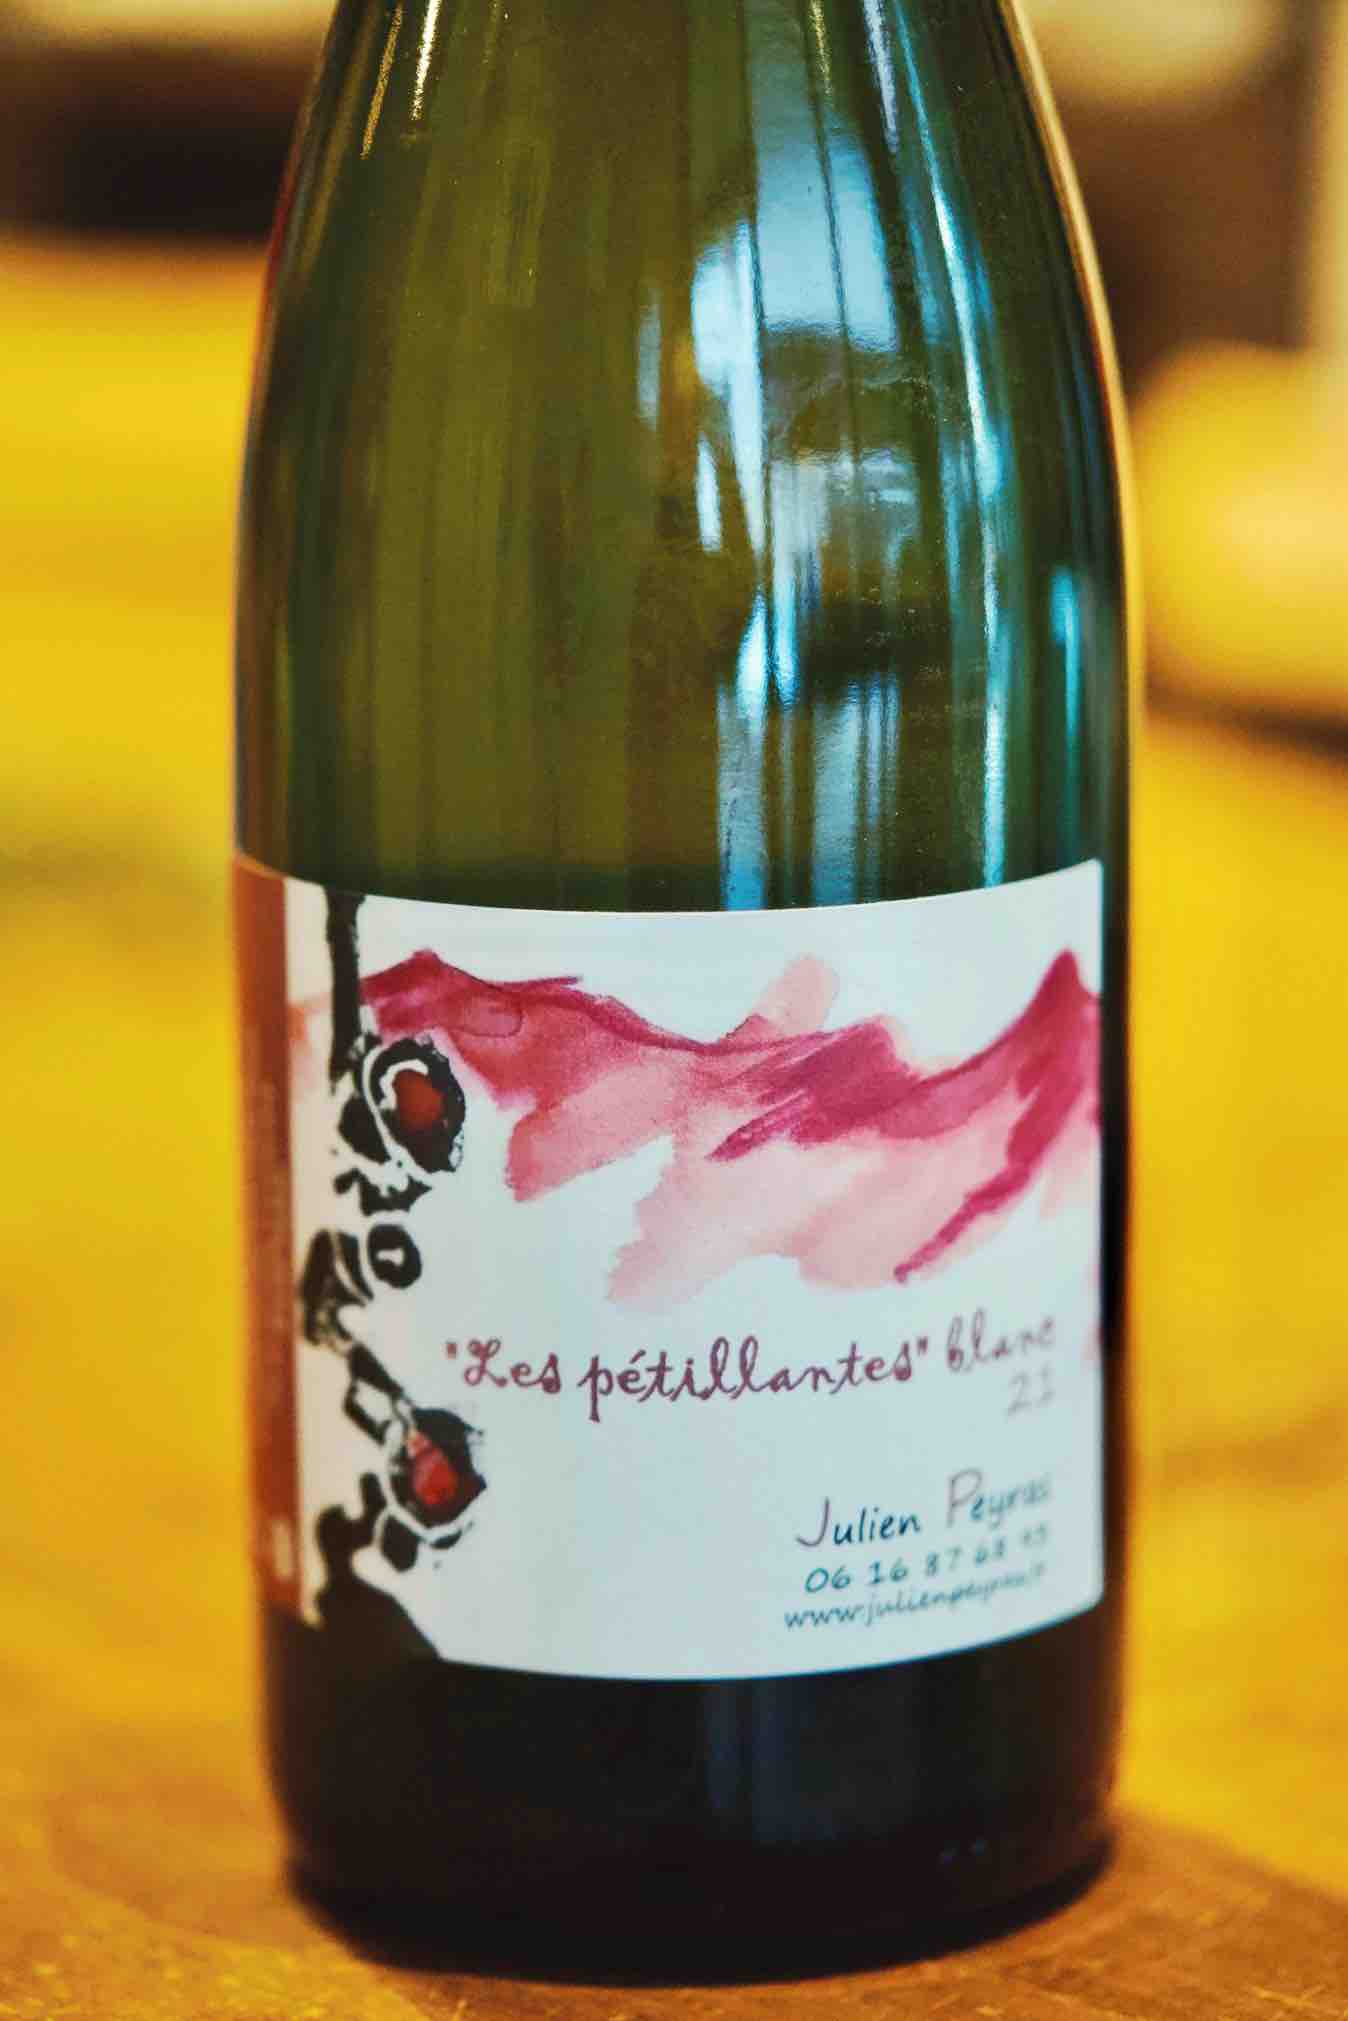 Vin de France Sparkling Wine Petnat "Les pétillantes", Julien Peyras